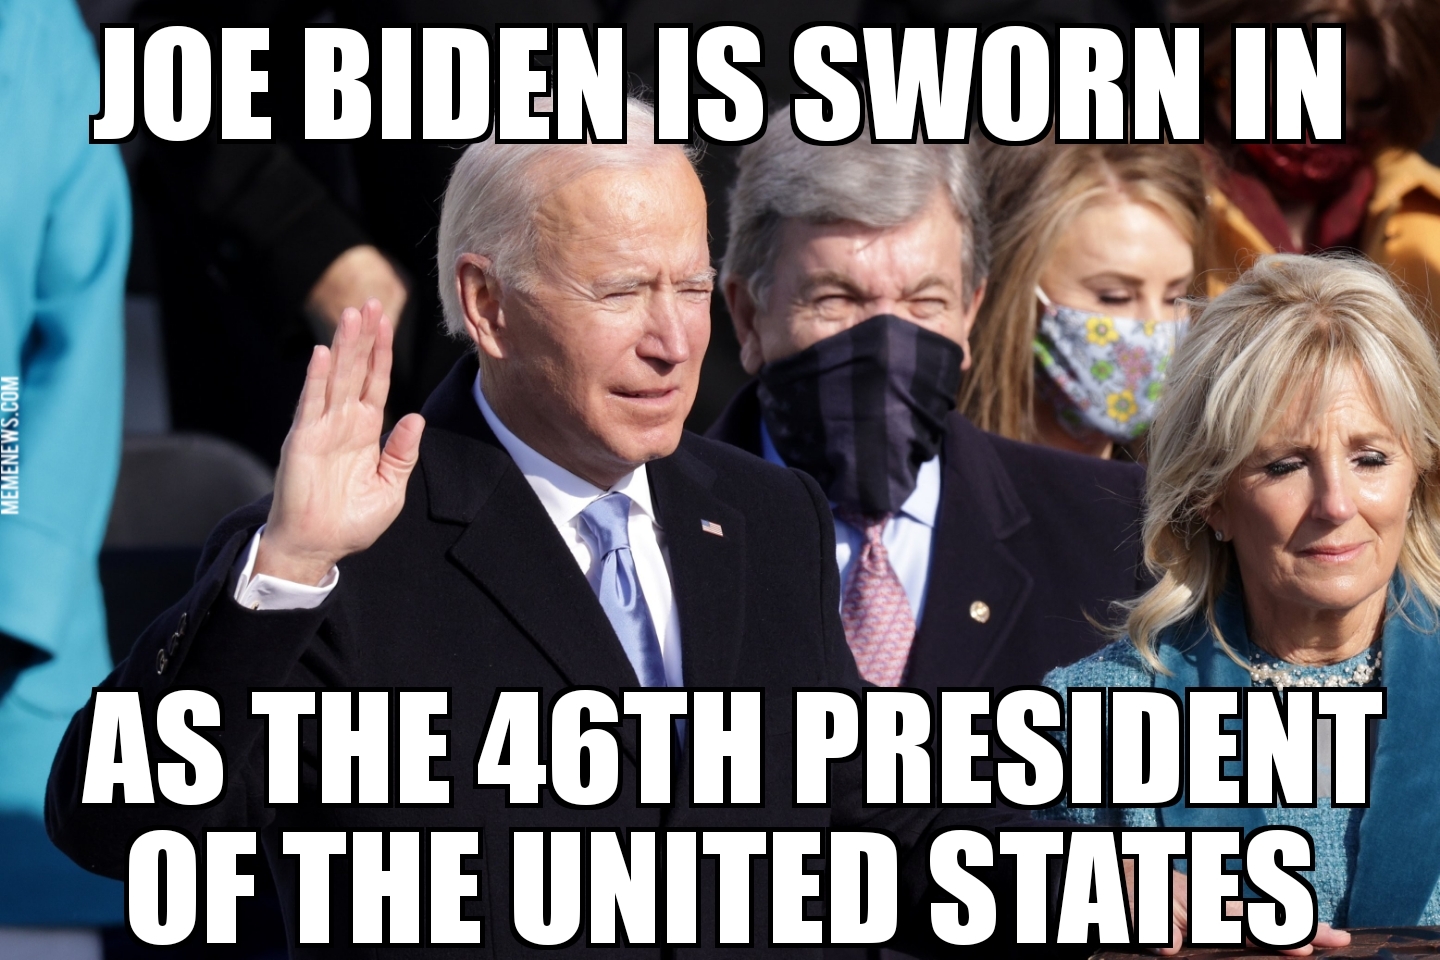 Joe Biden is sworn in as President